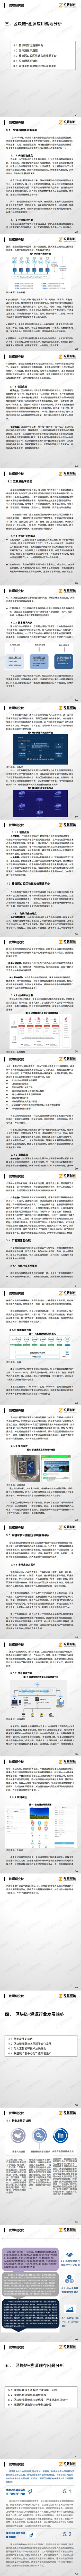 【陀螺研究院】中国“区块链+溯源”行业研究报告_1.jpg